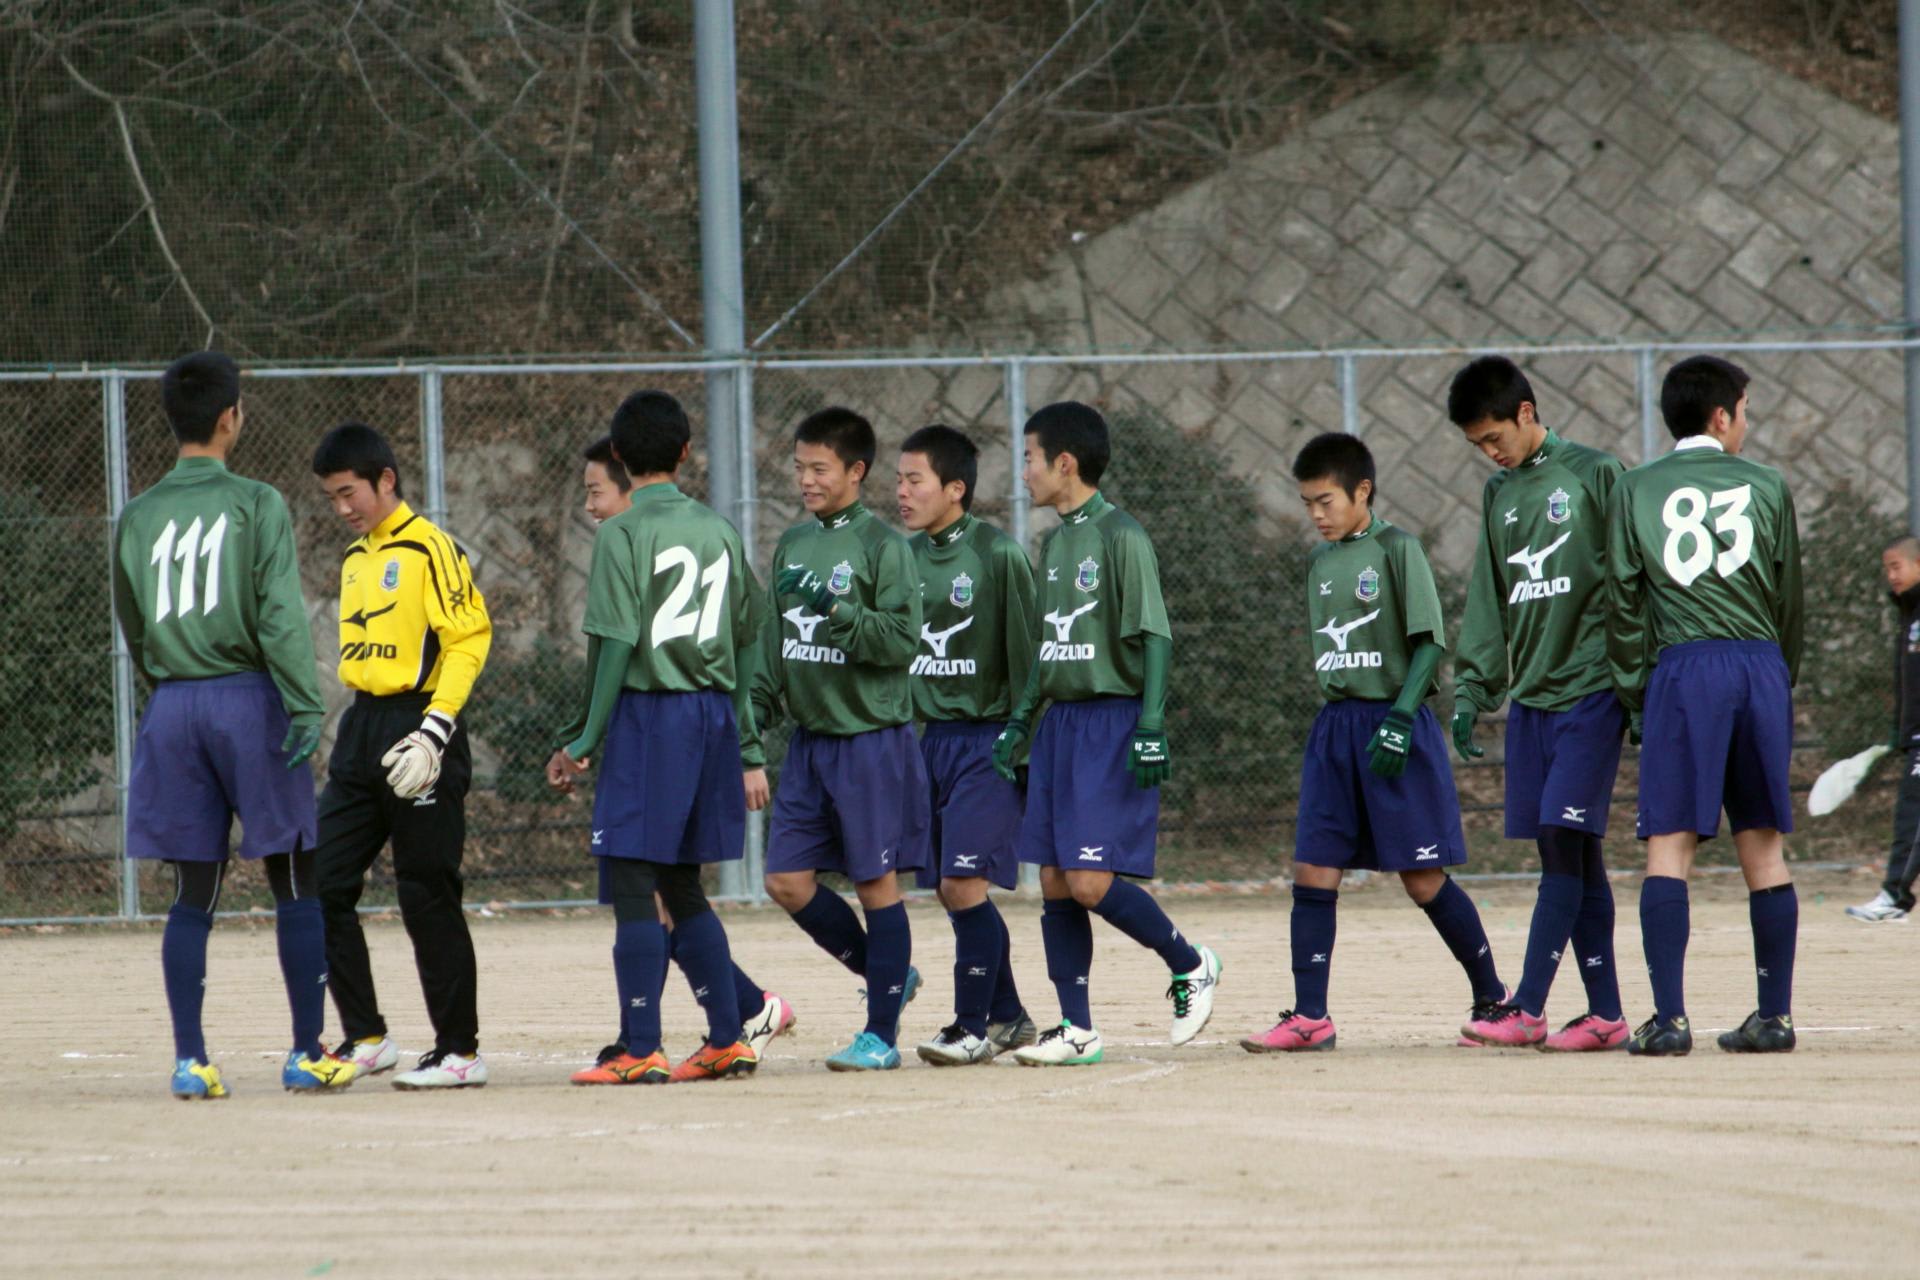 14 01 05 ニューイヤーサッカー大会 海田総合g 広島観音高校サッカー部の写真